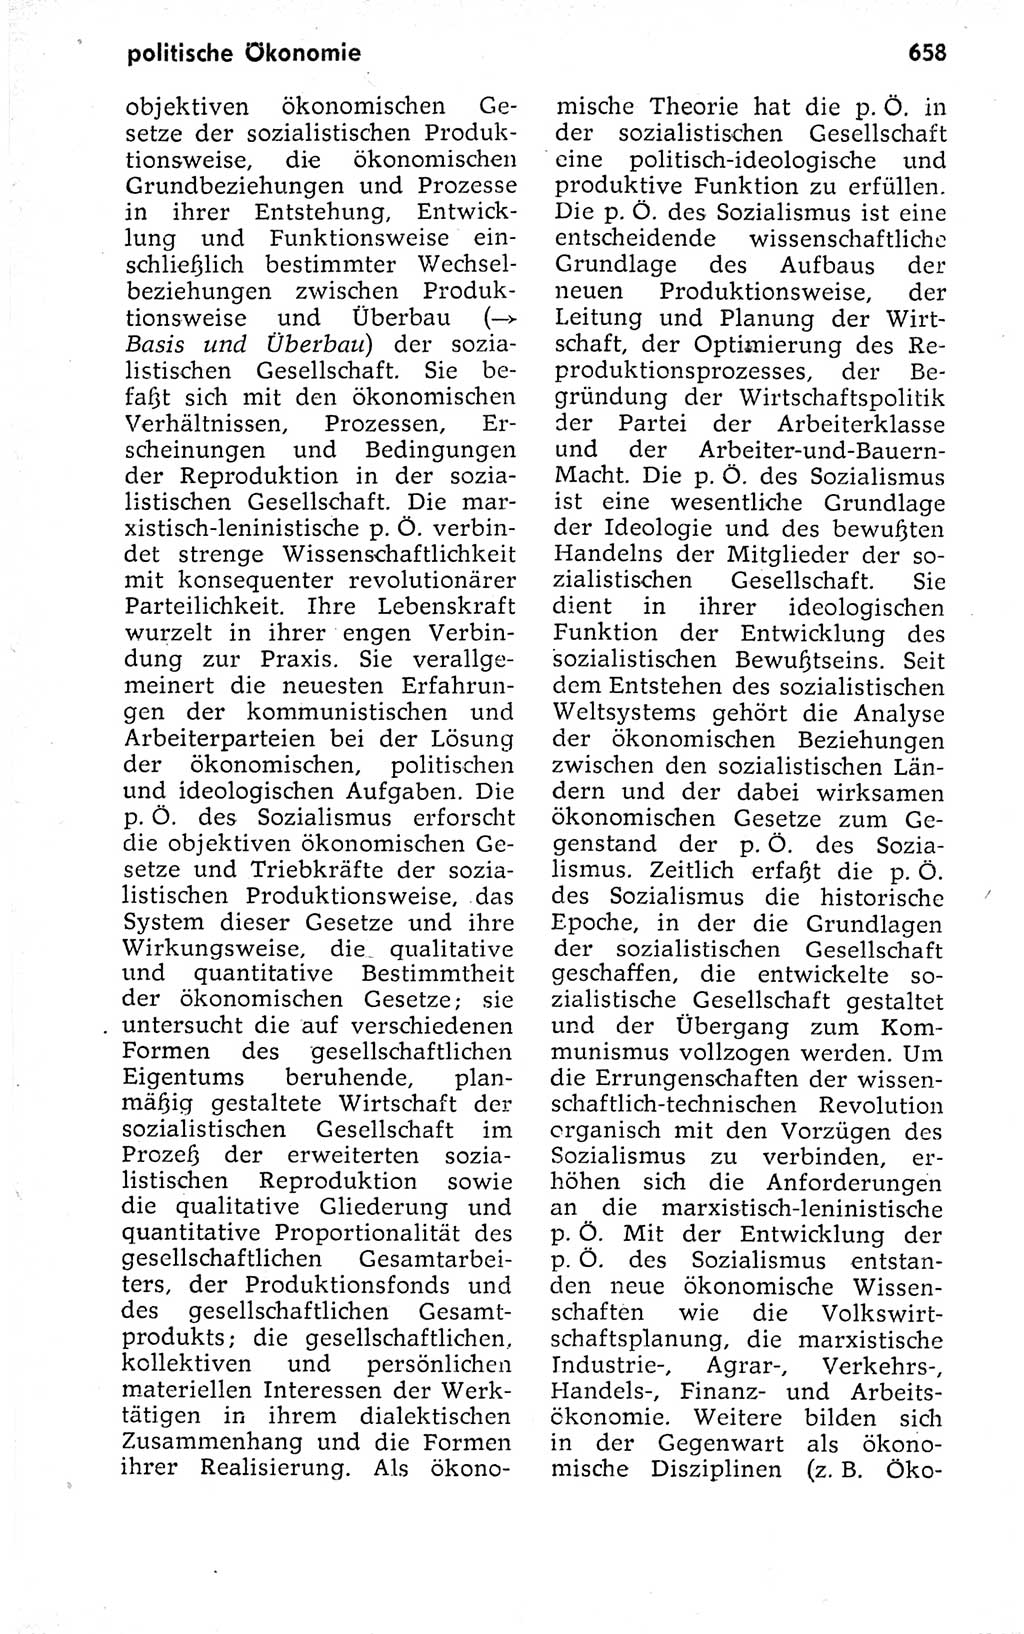 Kleines politisches Wörterbuch [Deutsche Demokratische Republik (DDR)] 1973, Seite 658 (Kl. pol. Wb. DDR 1973, S. 658)